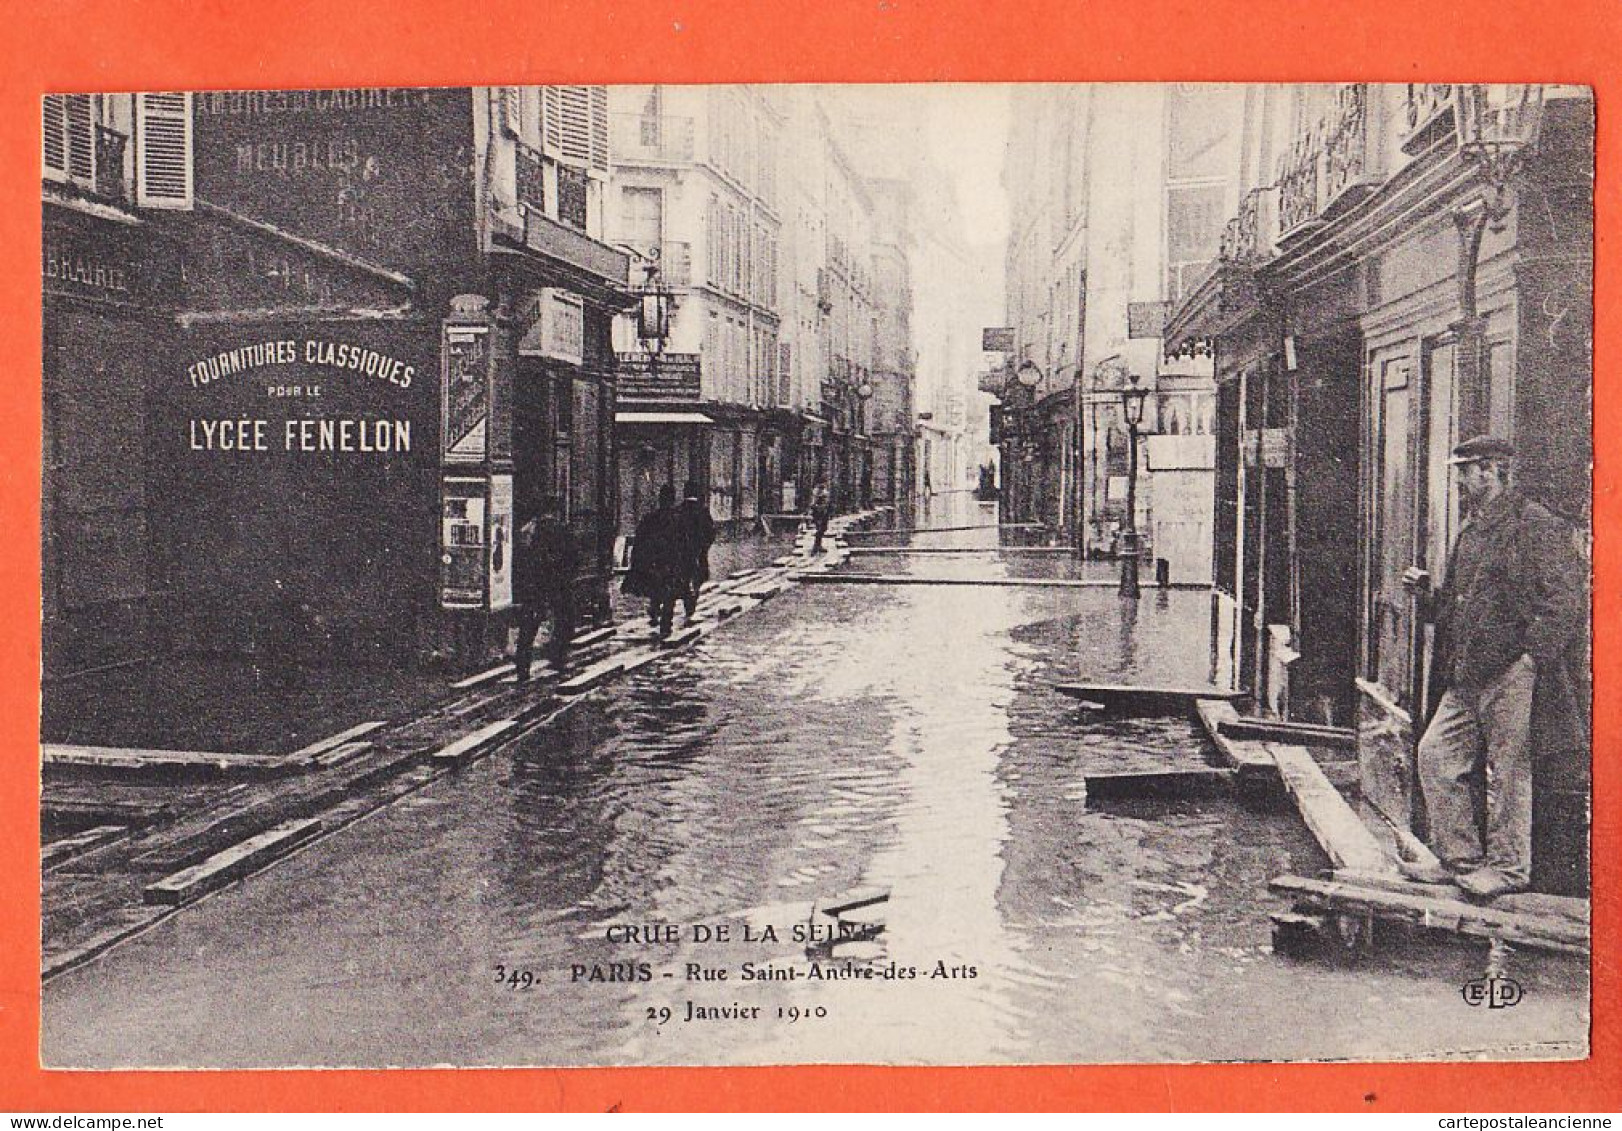 05137 / ⭐ ◉ PARIS VII ◉ Crue SEINE 29 Janvier 1910 ◉ Passerelle Rue SAINT-ANDRE-des-ARTS ◉ ELD LE DELEY 349 St - Paris Flood, 1910